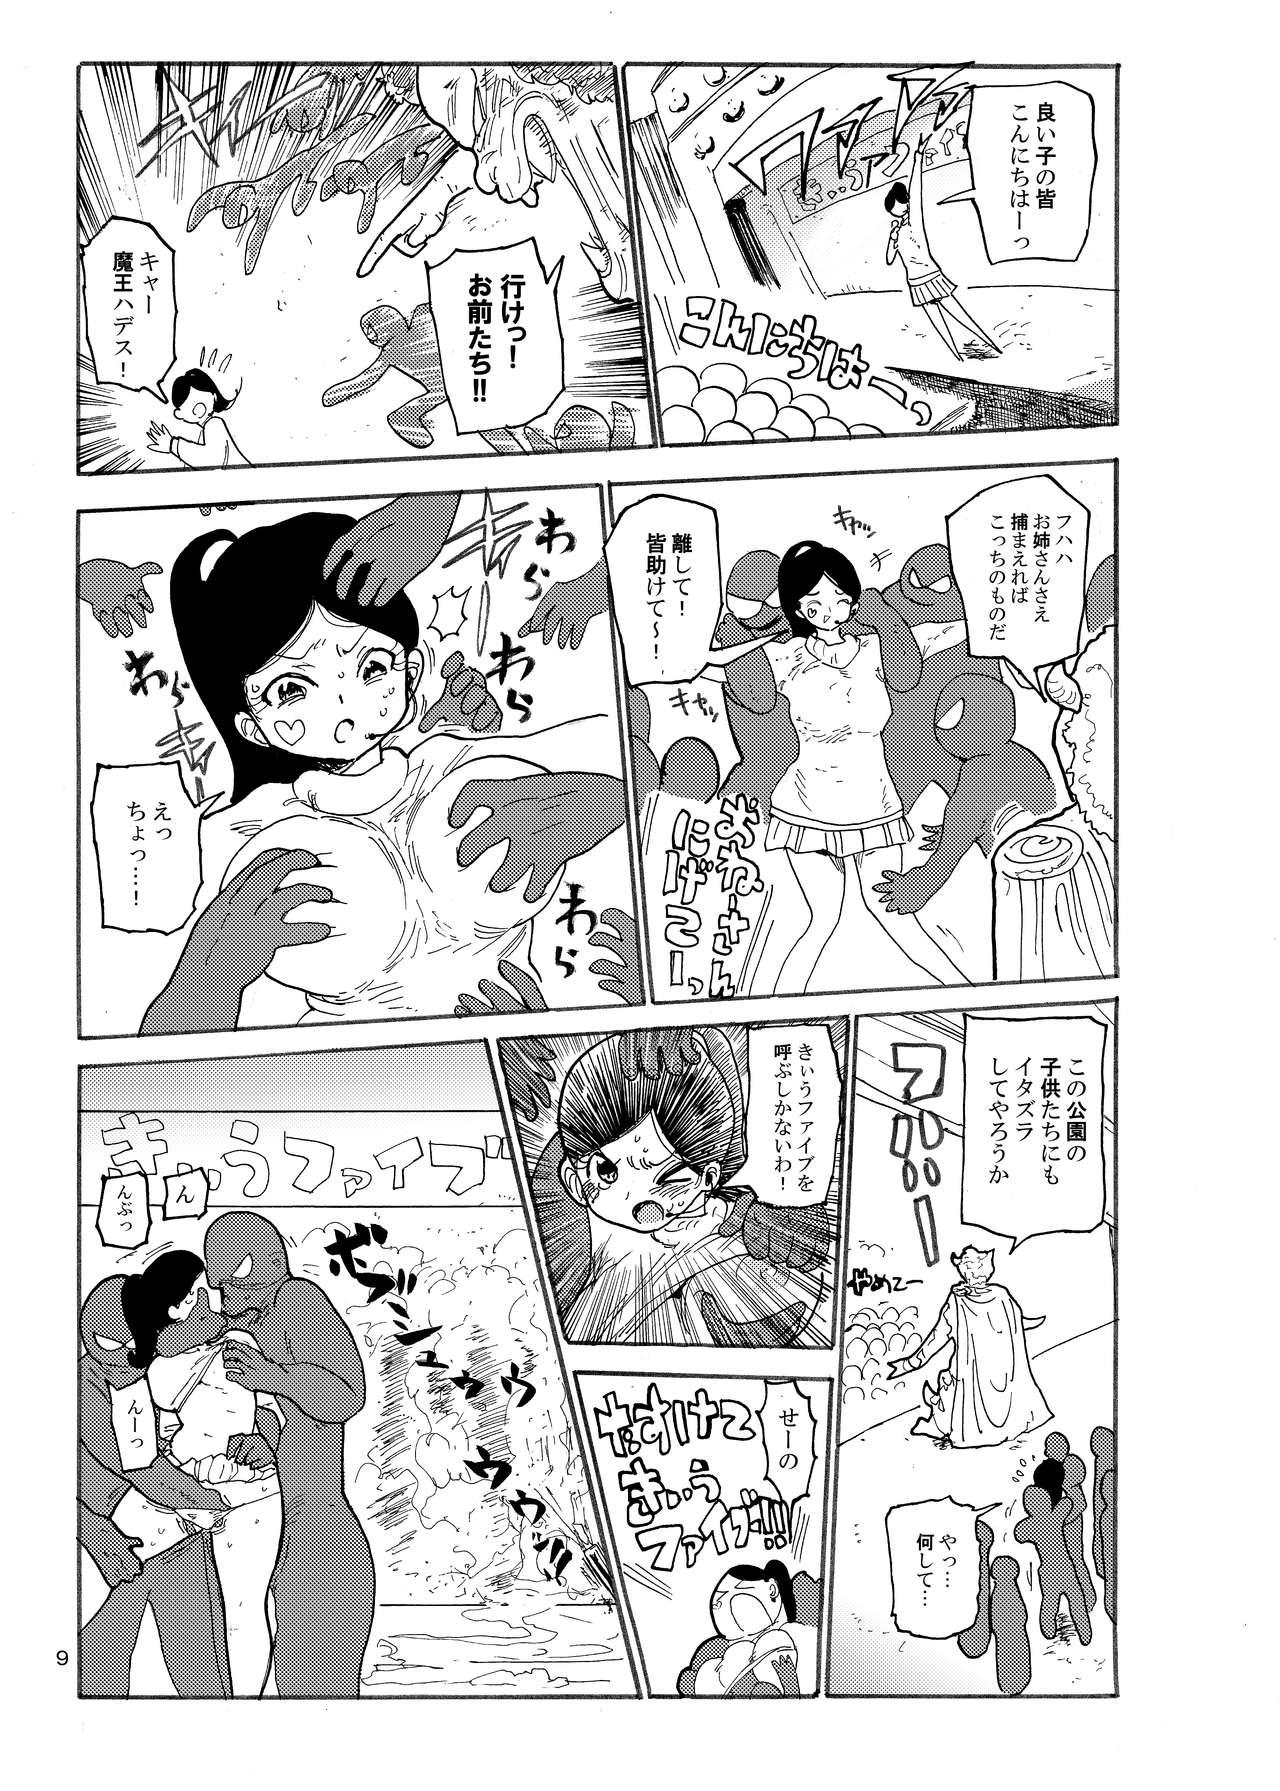 Sensual Fuyu ni mo Nandemo Chousa Shoujo no Doujinshi ga Deta? Wakarimashita Chousa Shimasu Stroking - Page 8